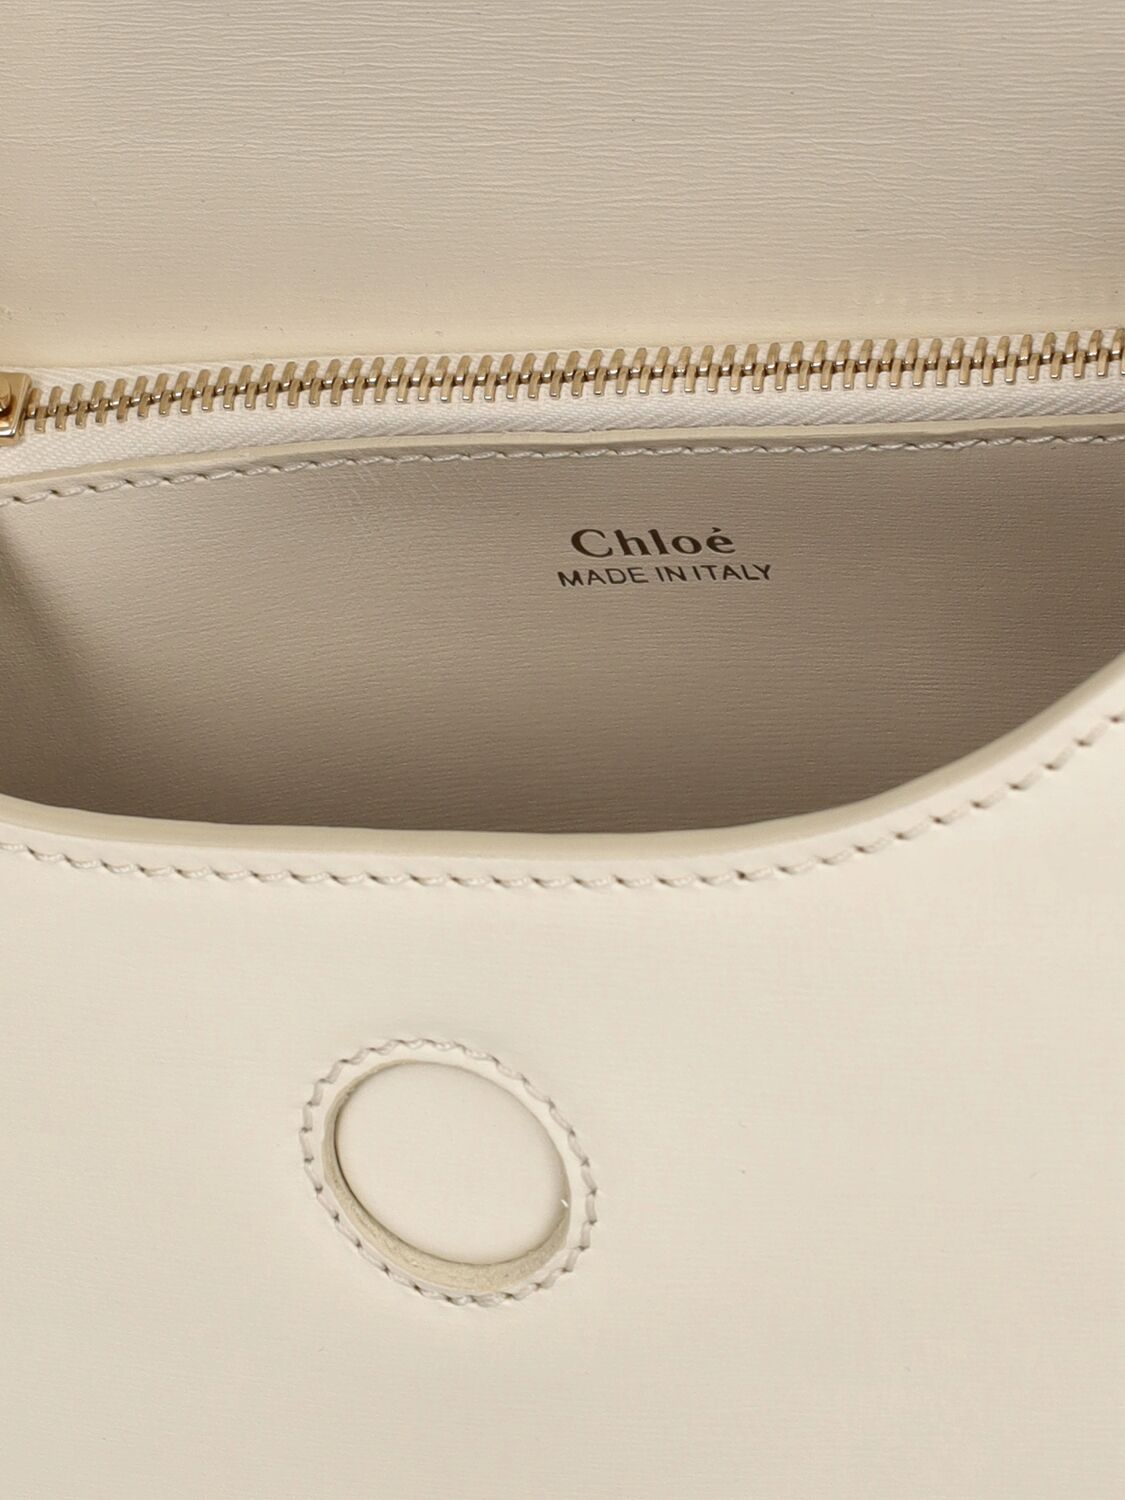 Shop Chloé Arlene Leather Shoulder Bag In Misty Ivory